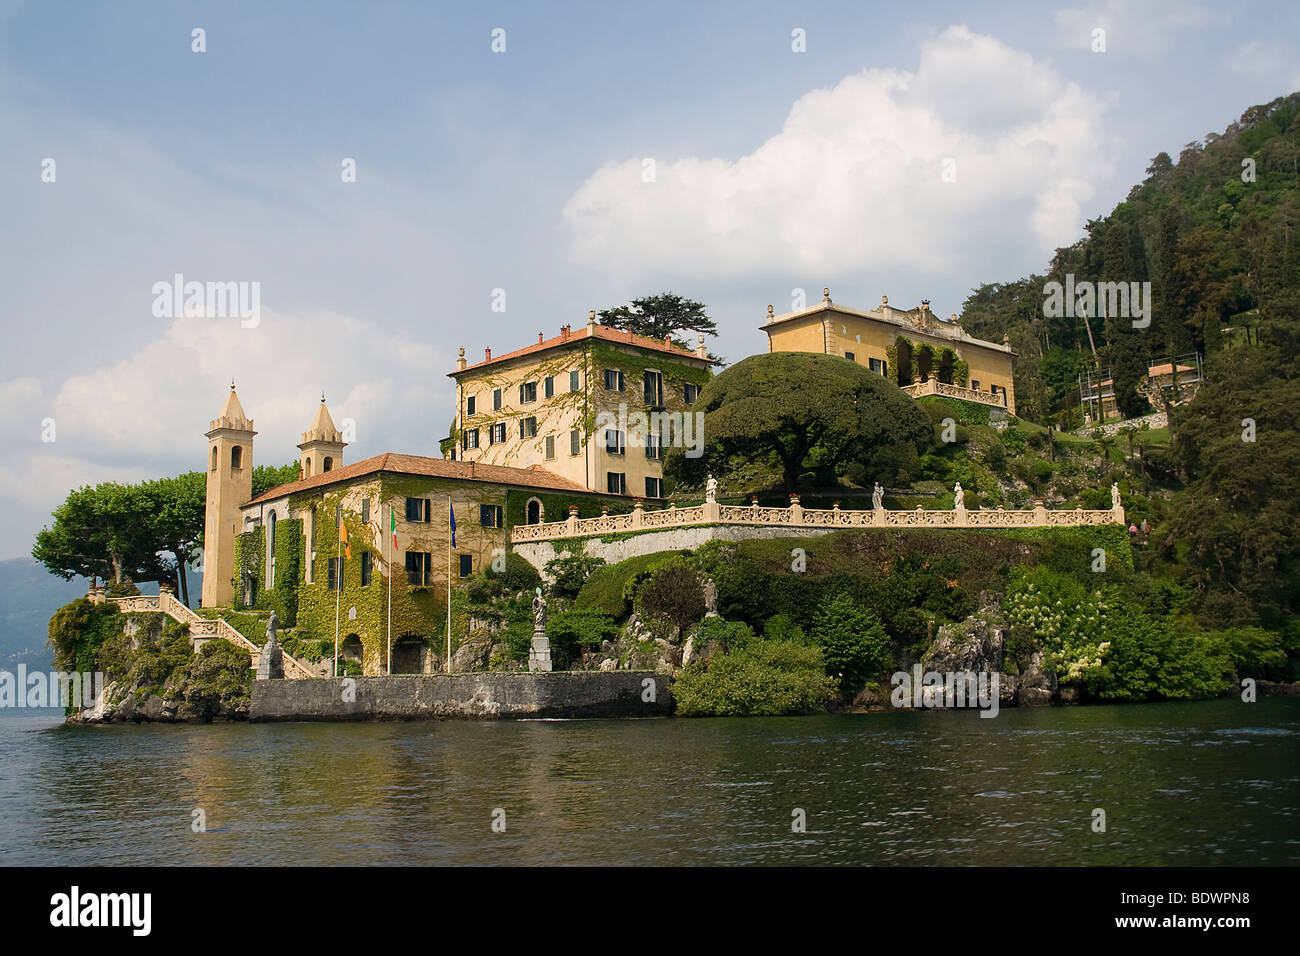 Villa Del Balbianello, Lenno, Lake Como, Italy Stock Photo